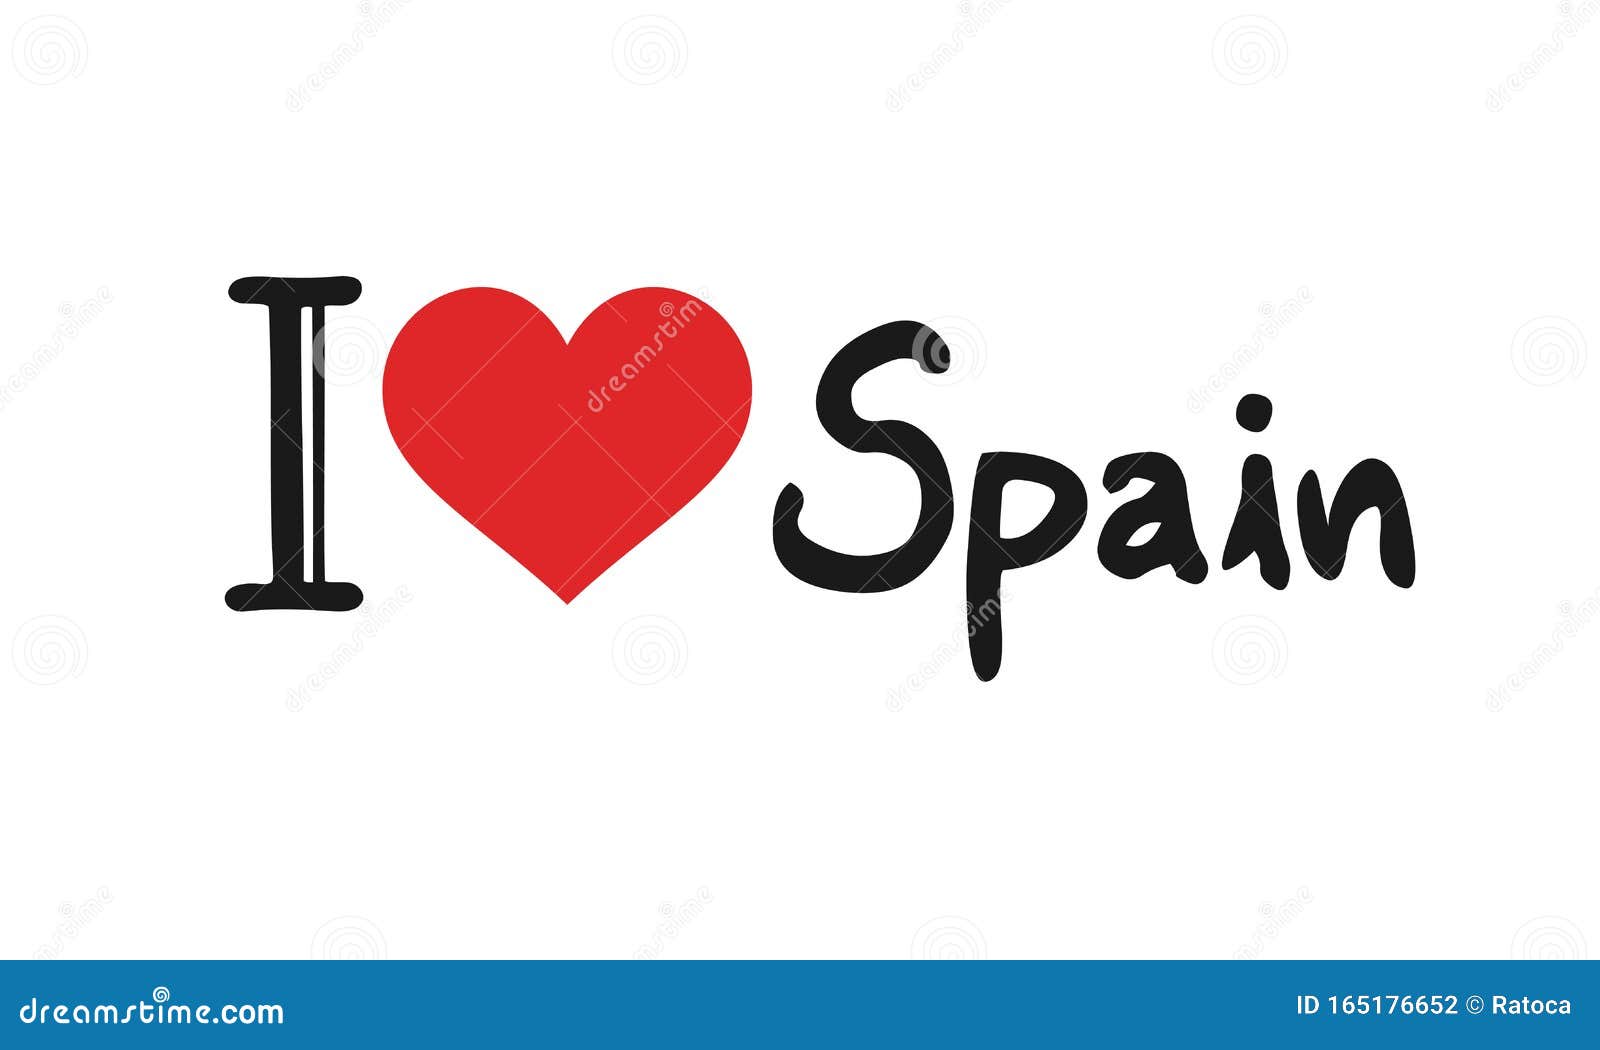 Love spain. Я люблю Испанию.